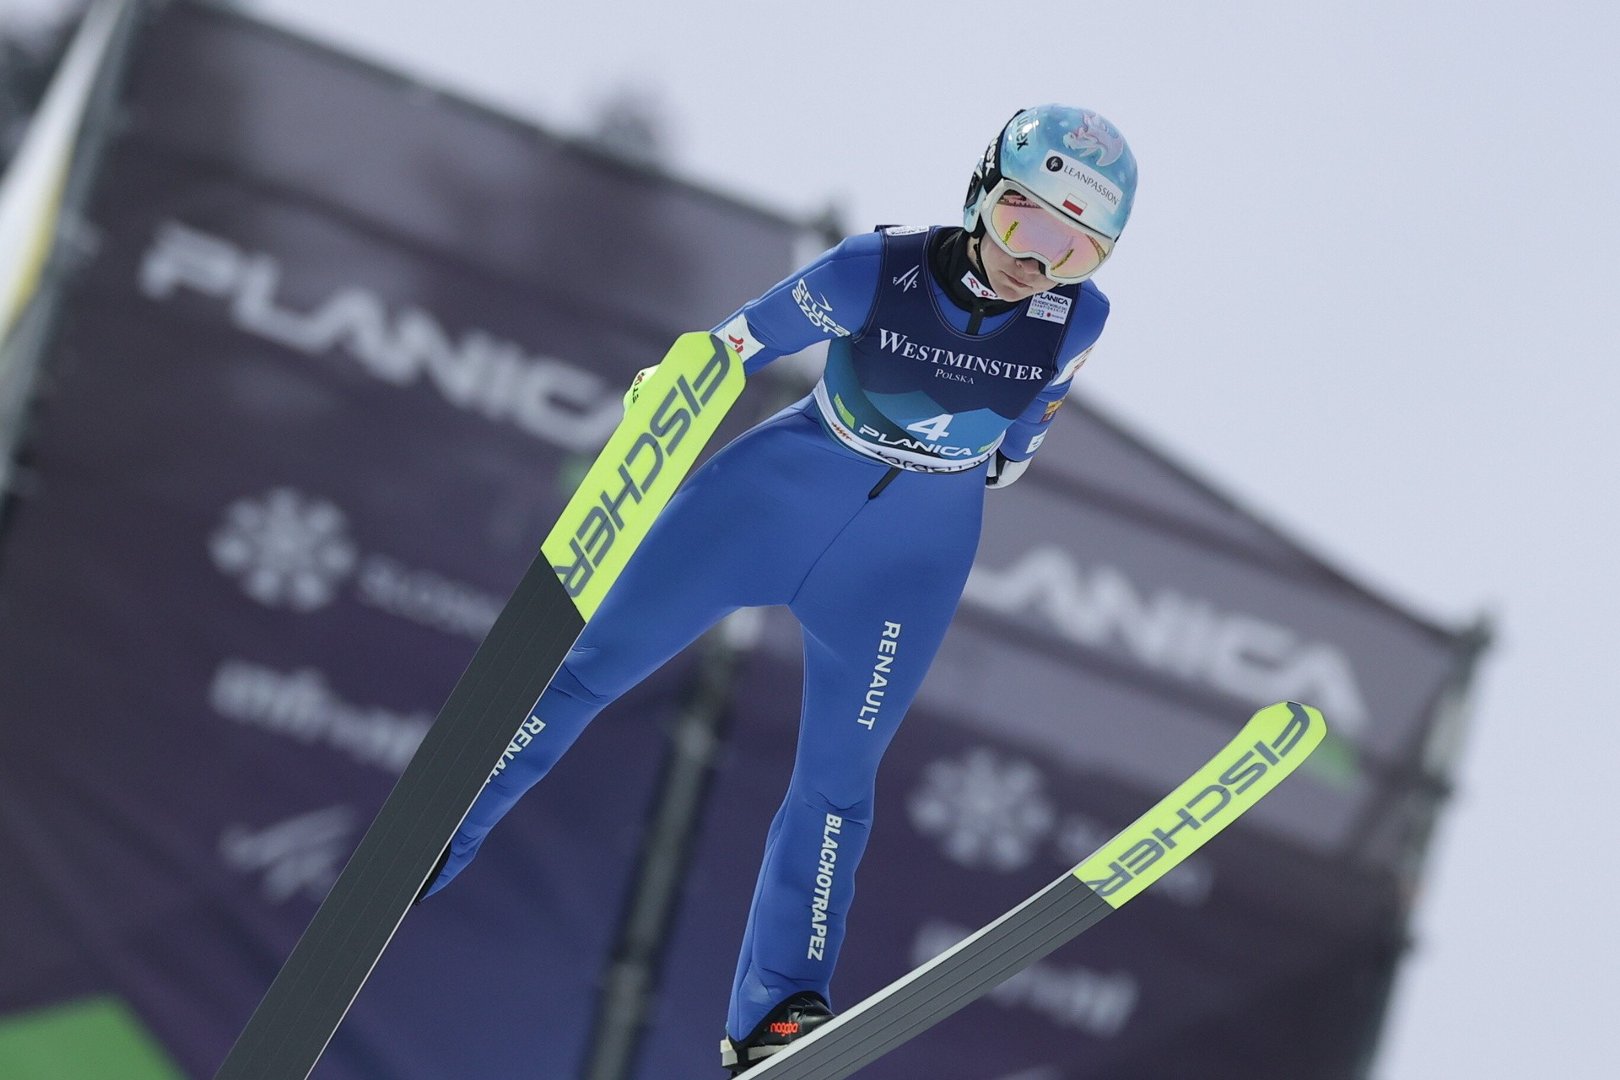 MŚ Planica 2023: wyniki skoków narciarskich kobiet. Katharina Althaus  najlepsza na skoczni normalnej, Nicole Konderla daleko | Nowiny